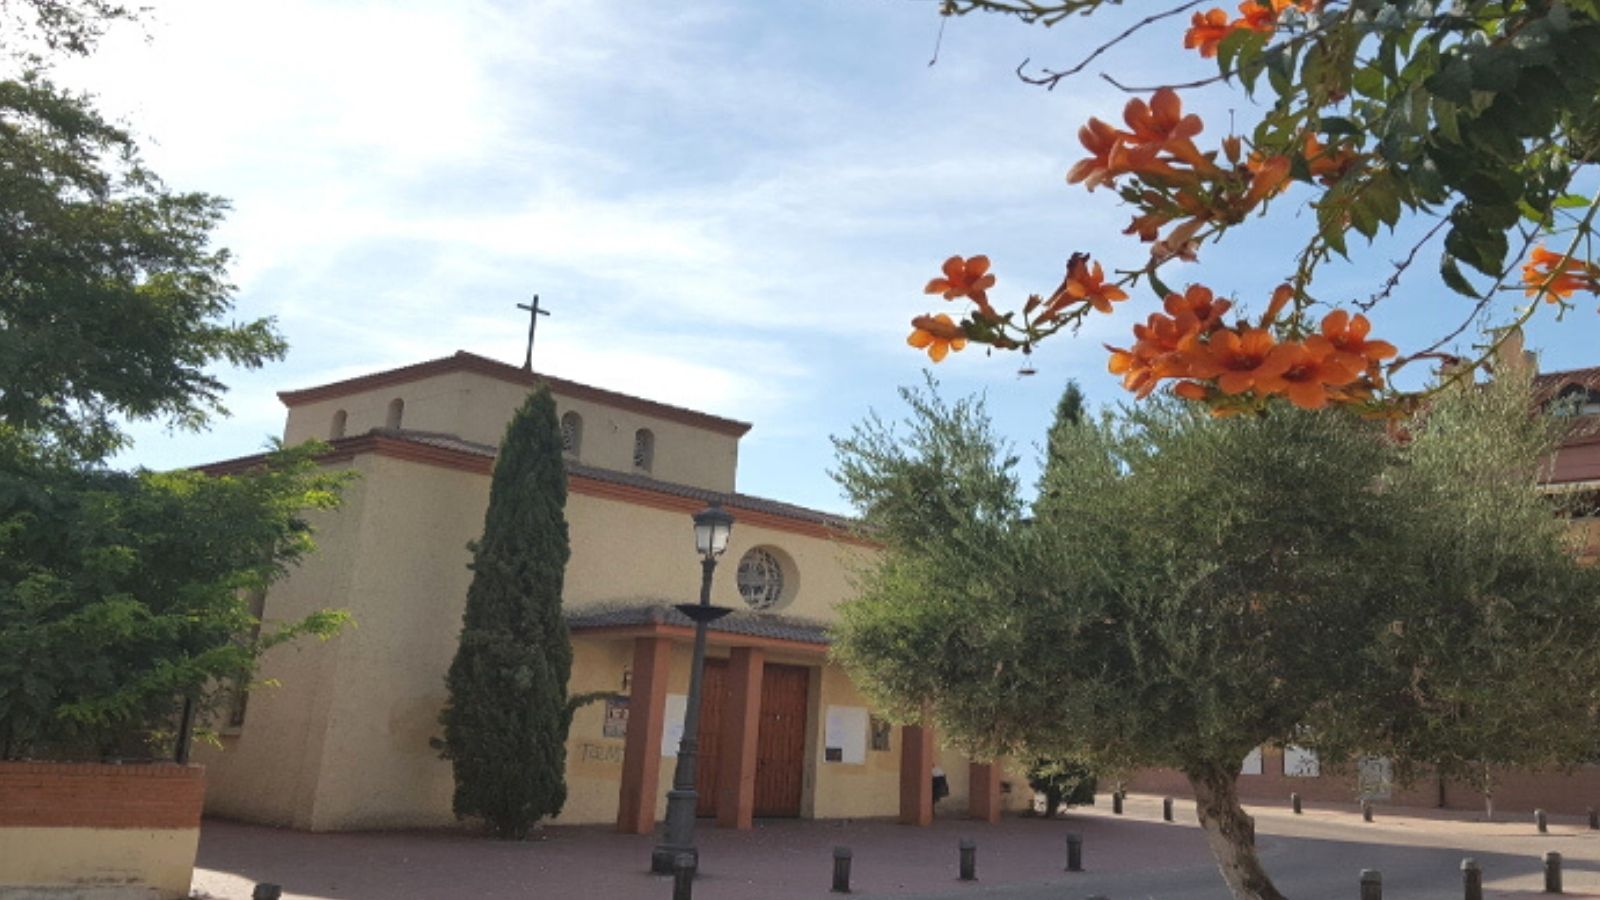 La parroquia de Velilla de San Antonio, San Sebastián Mártir cumple 40 años